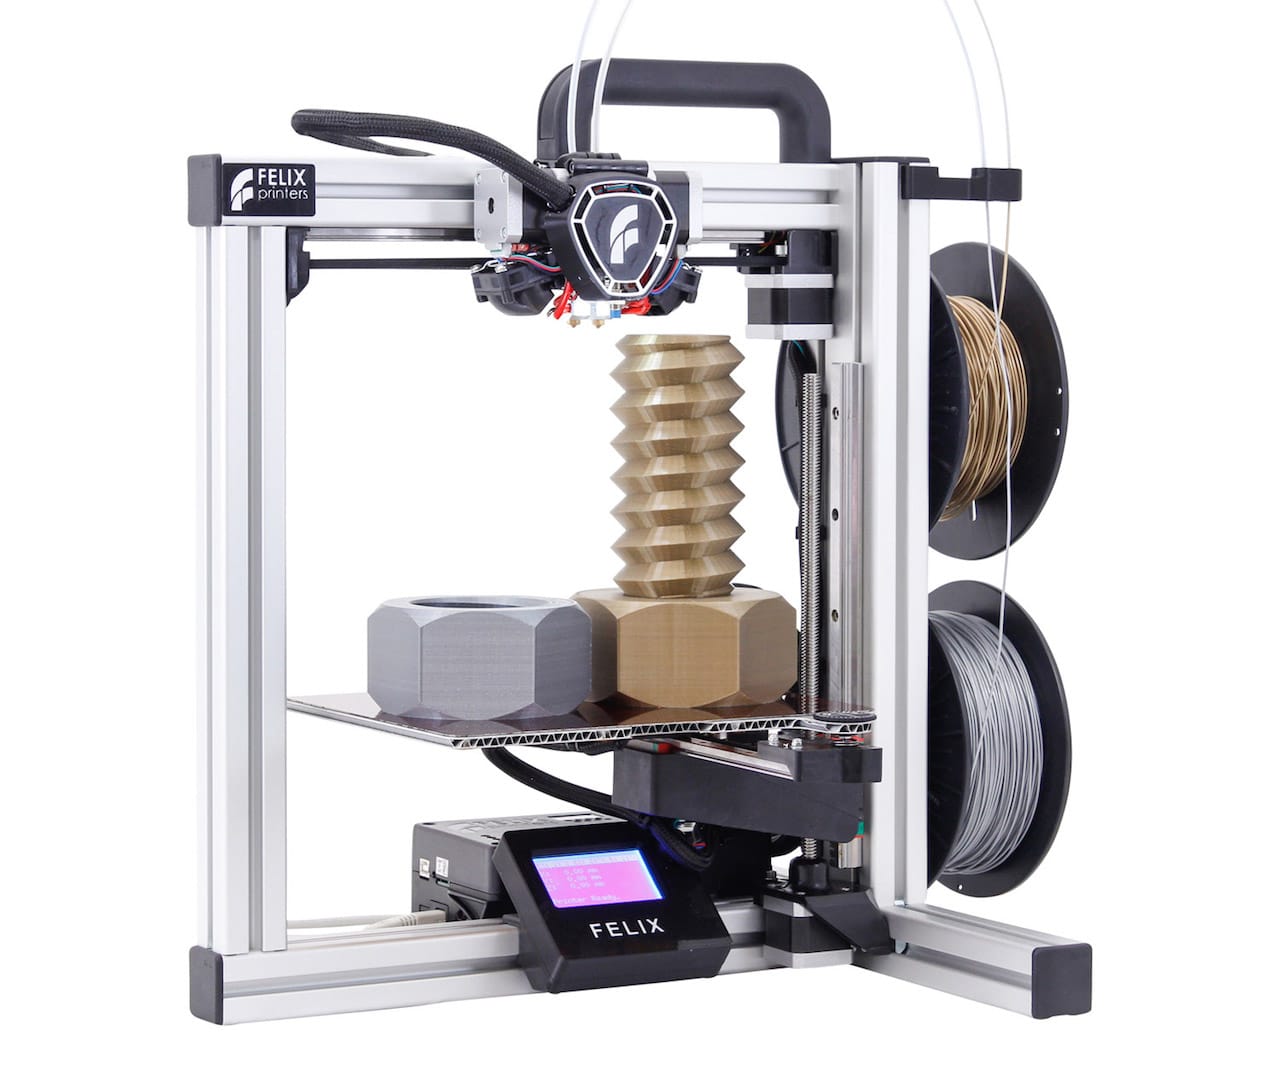  The new FELIX Tec 4 desktop 3D printer 